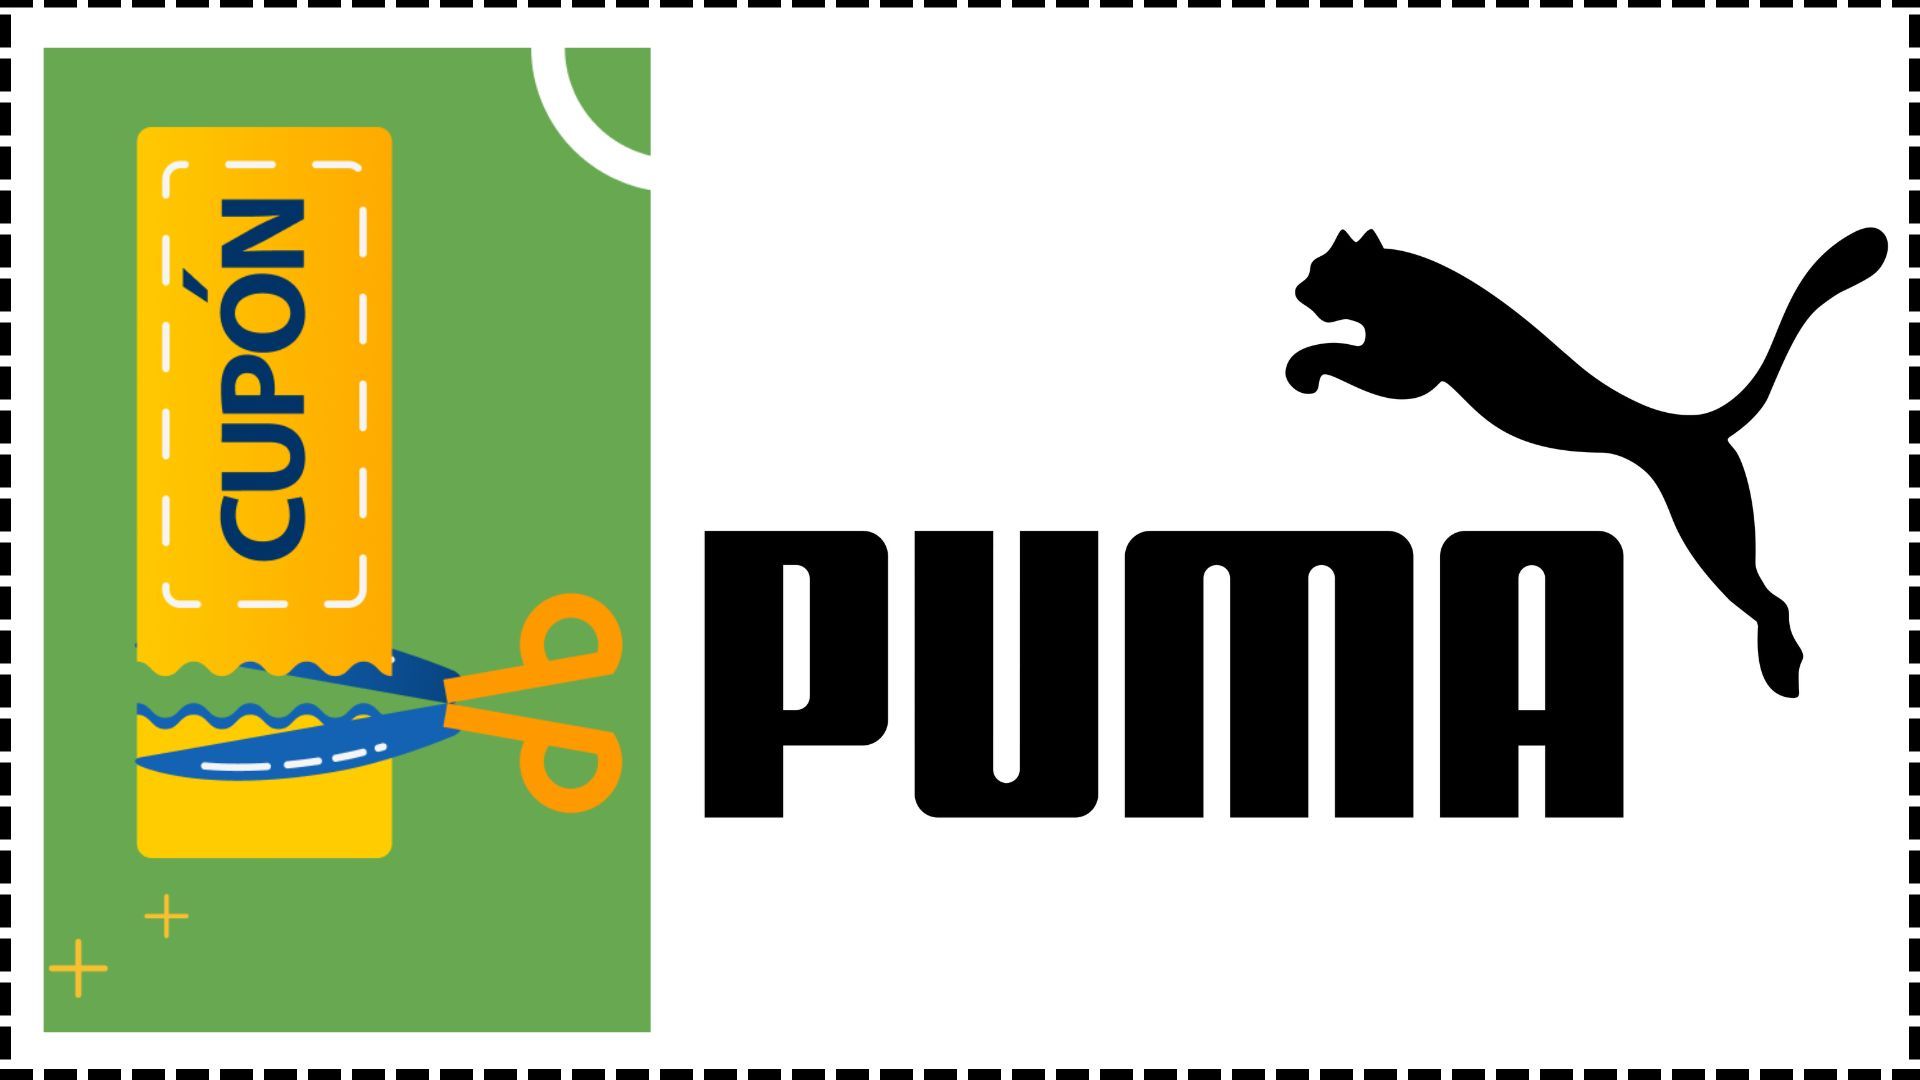 patrulla Umeki Respectivamente Puma - Cupones - Top Outlets Descuentos Ahorra ya!